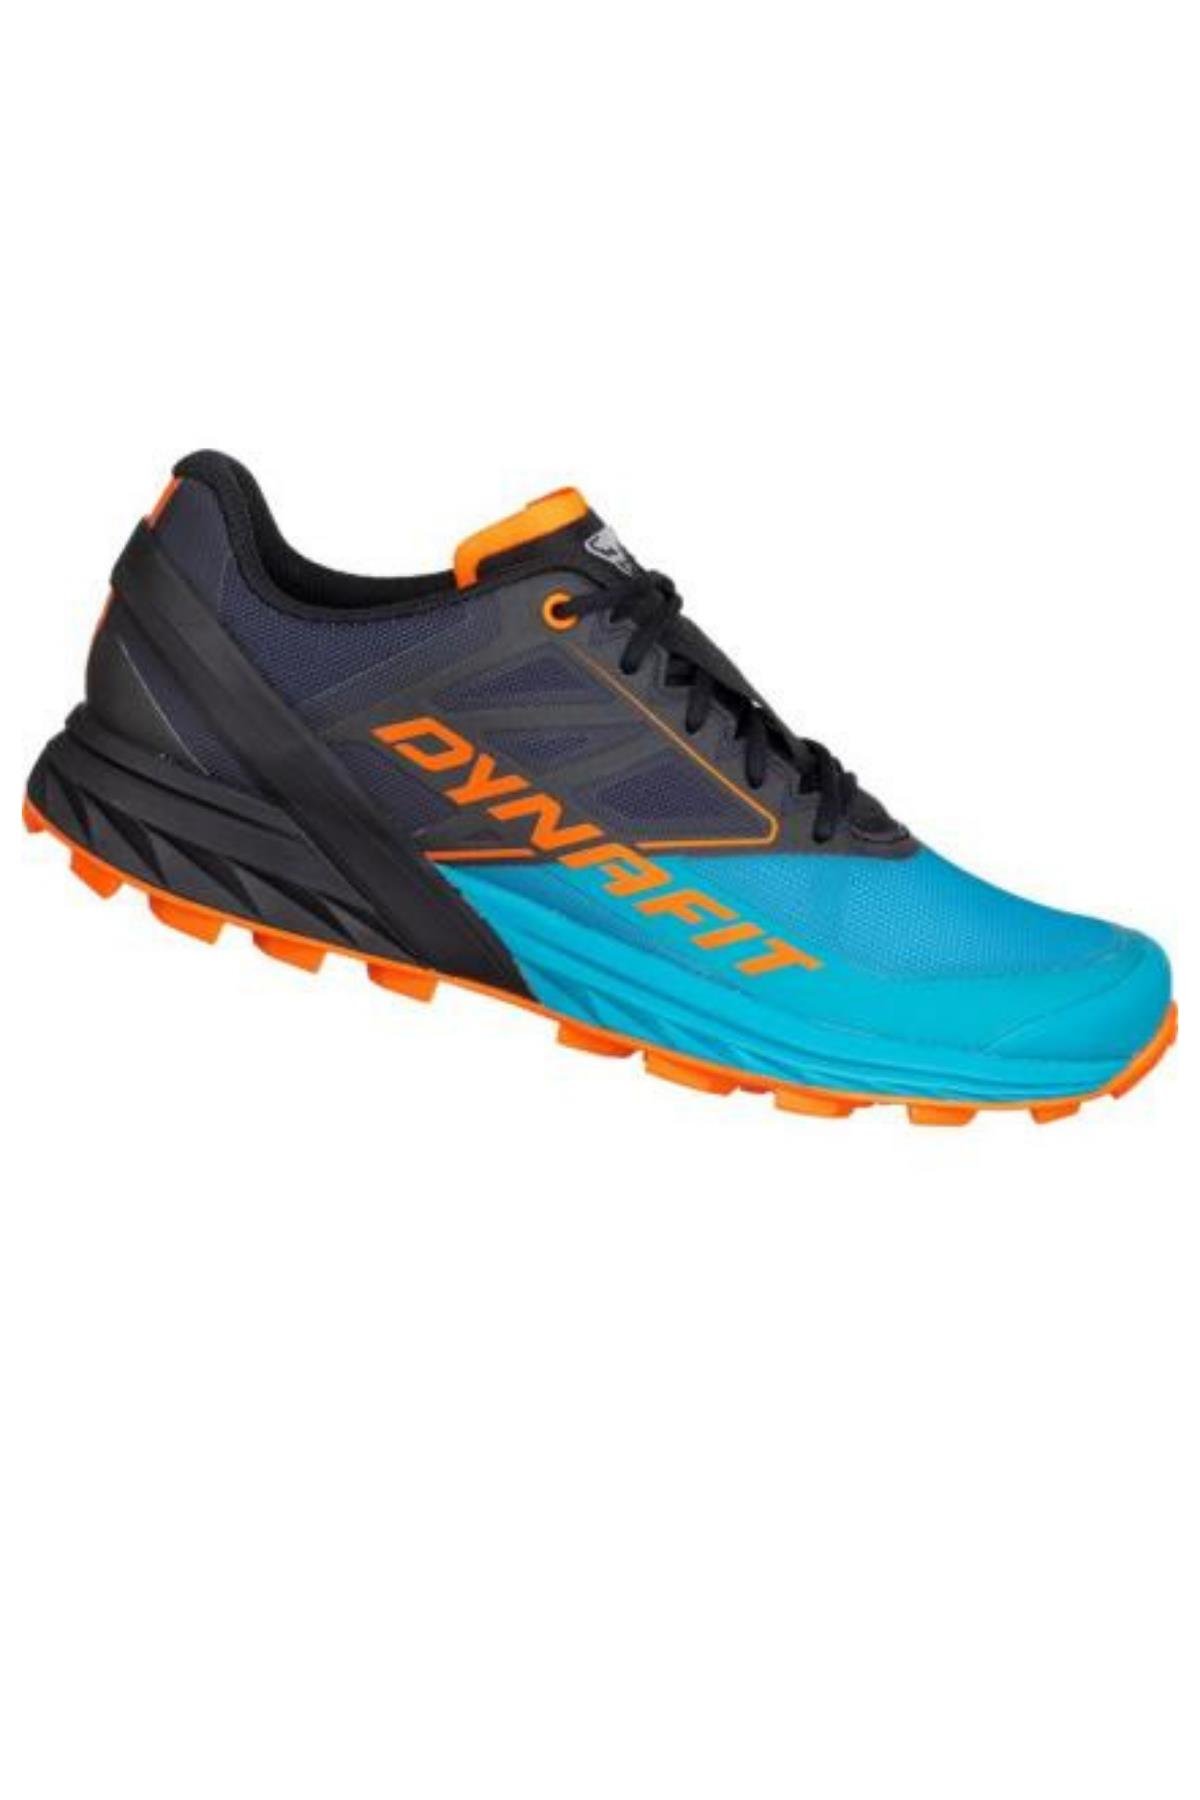 Dynafit Kadın Alpine Koşu Ayakkabısı